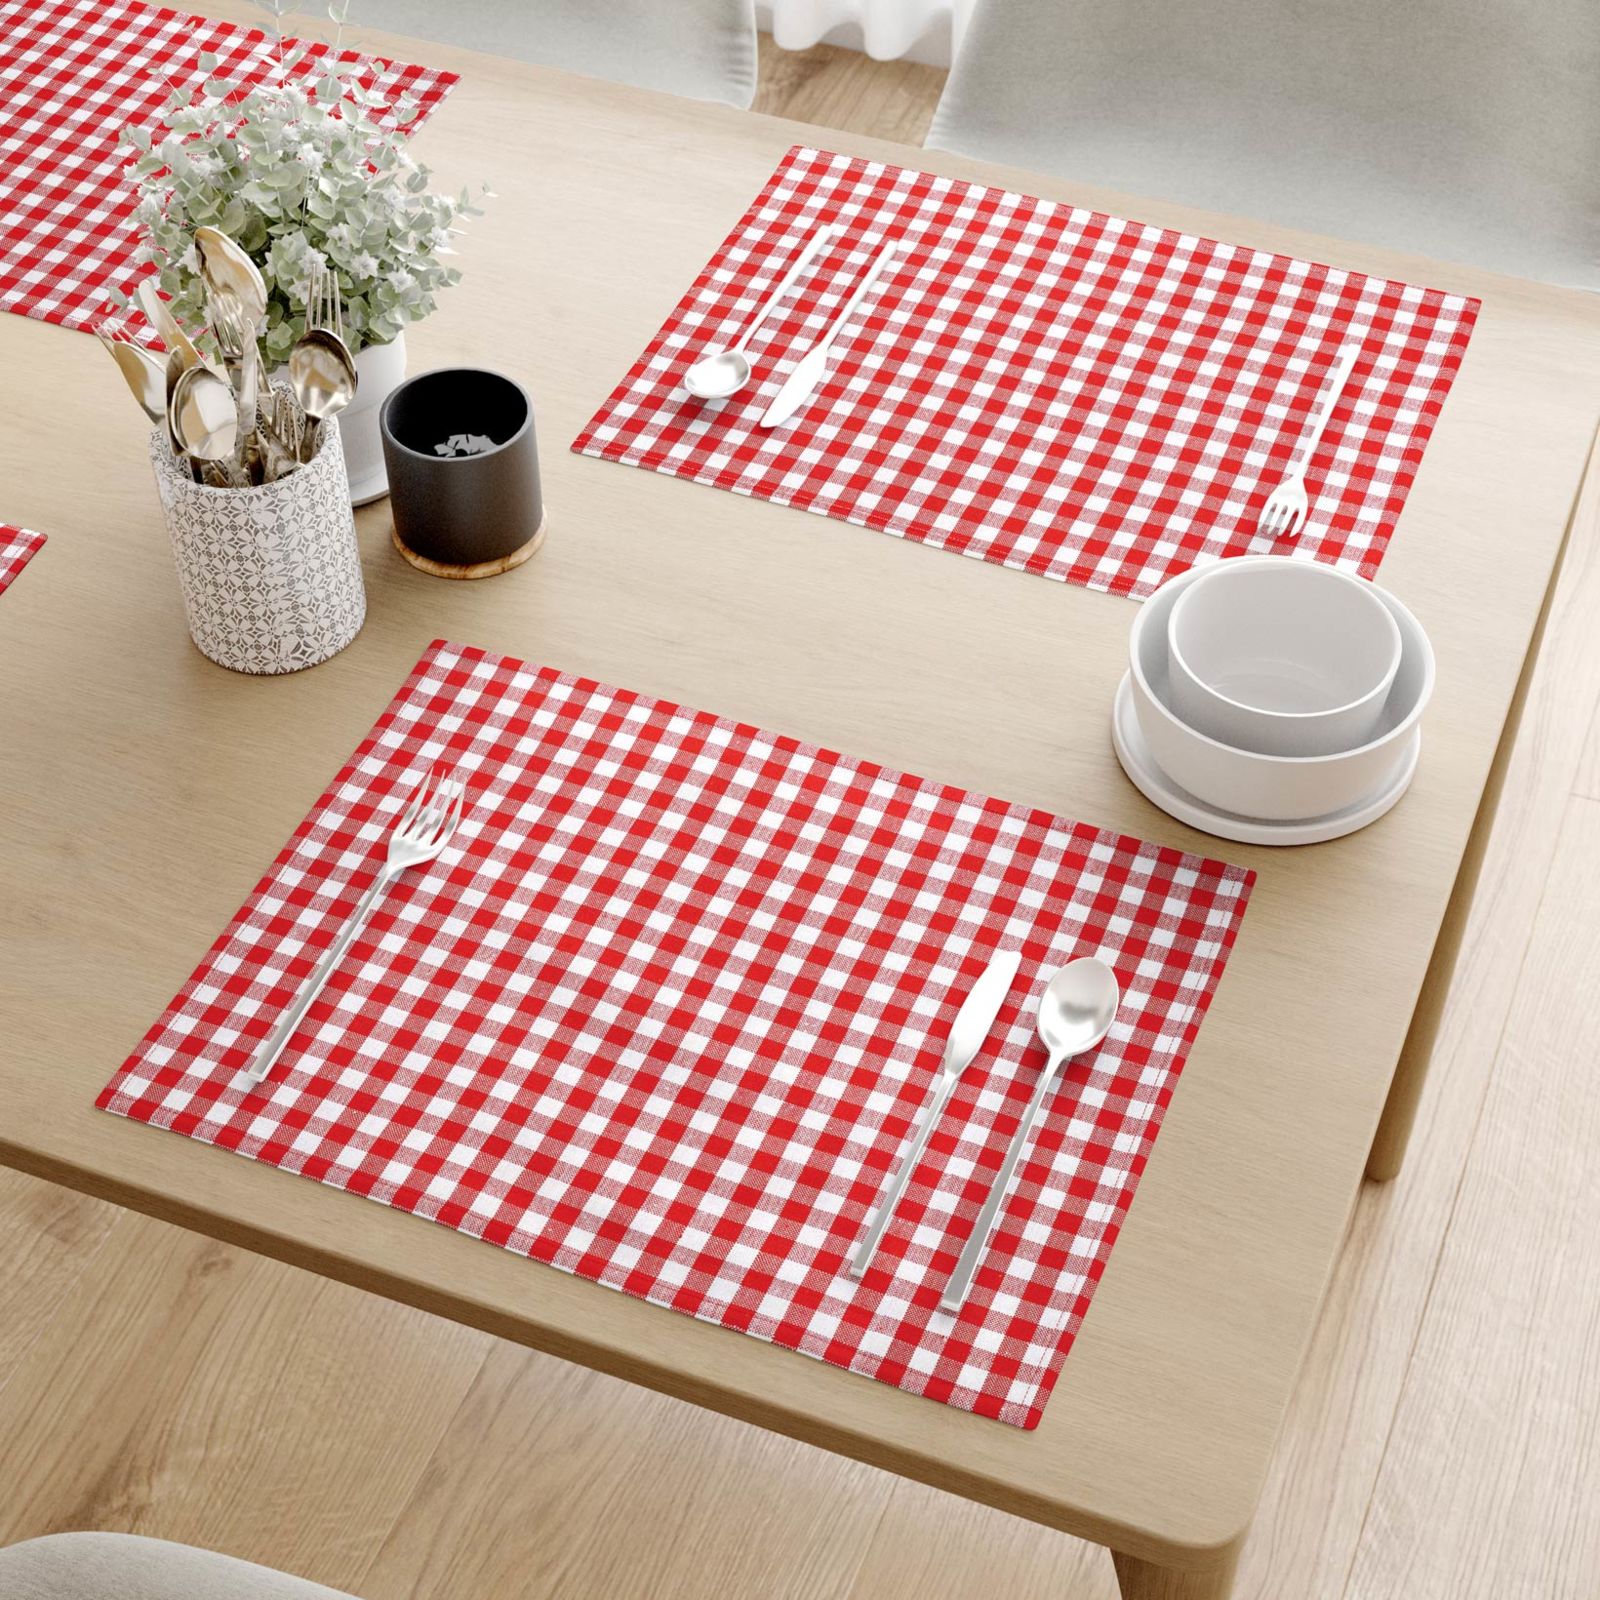 Prestieranie na stôl 100% bavlna - malé červeno-biele kocky - sada 2ks